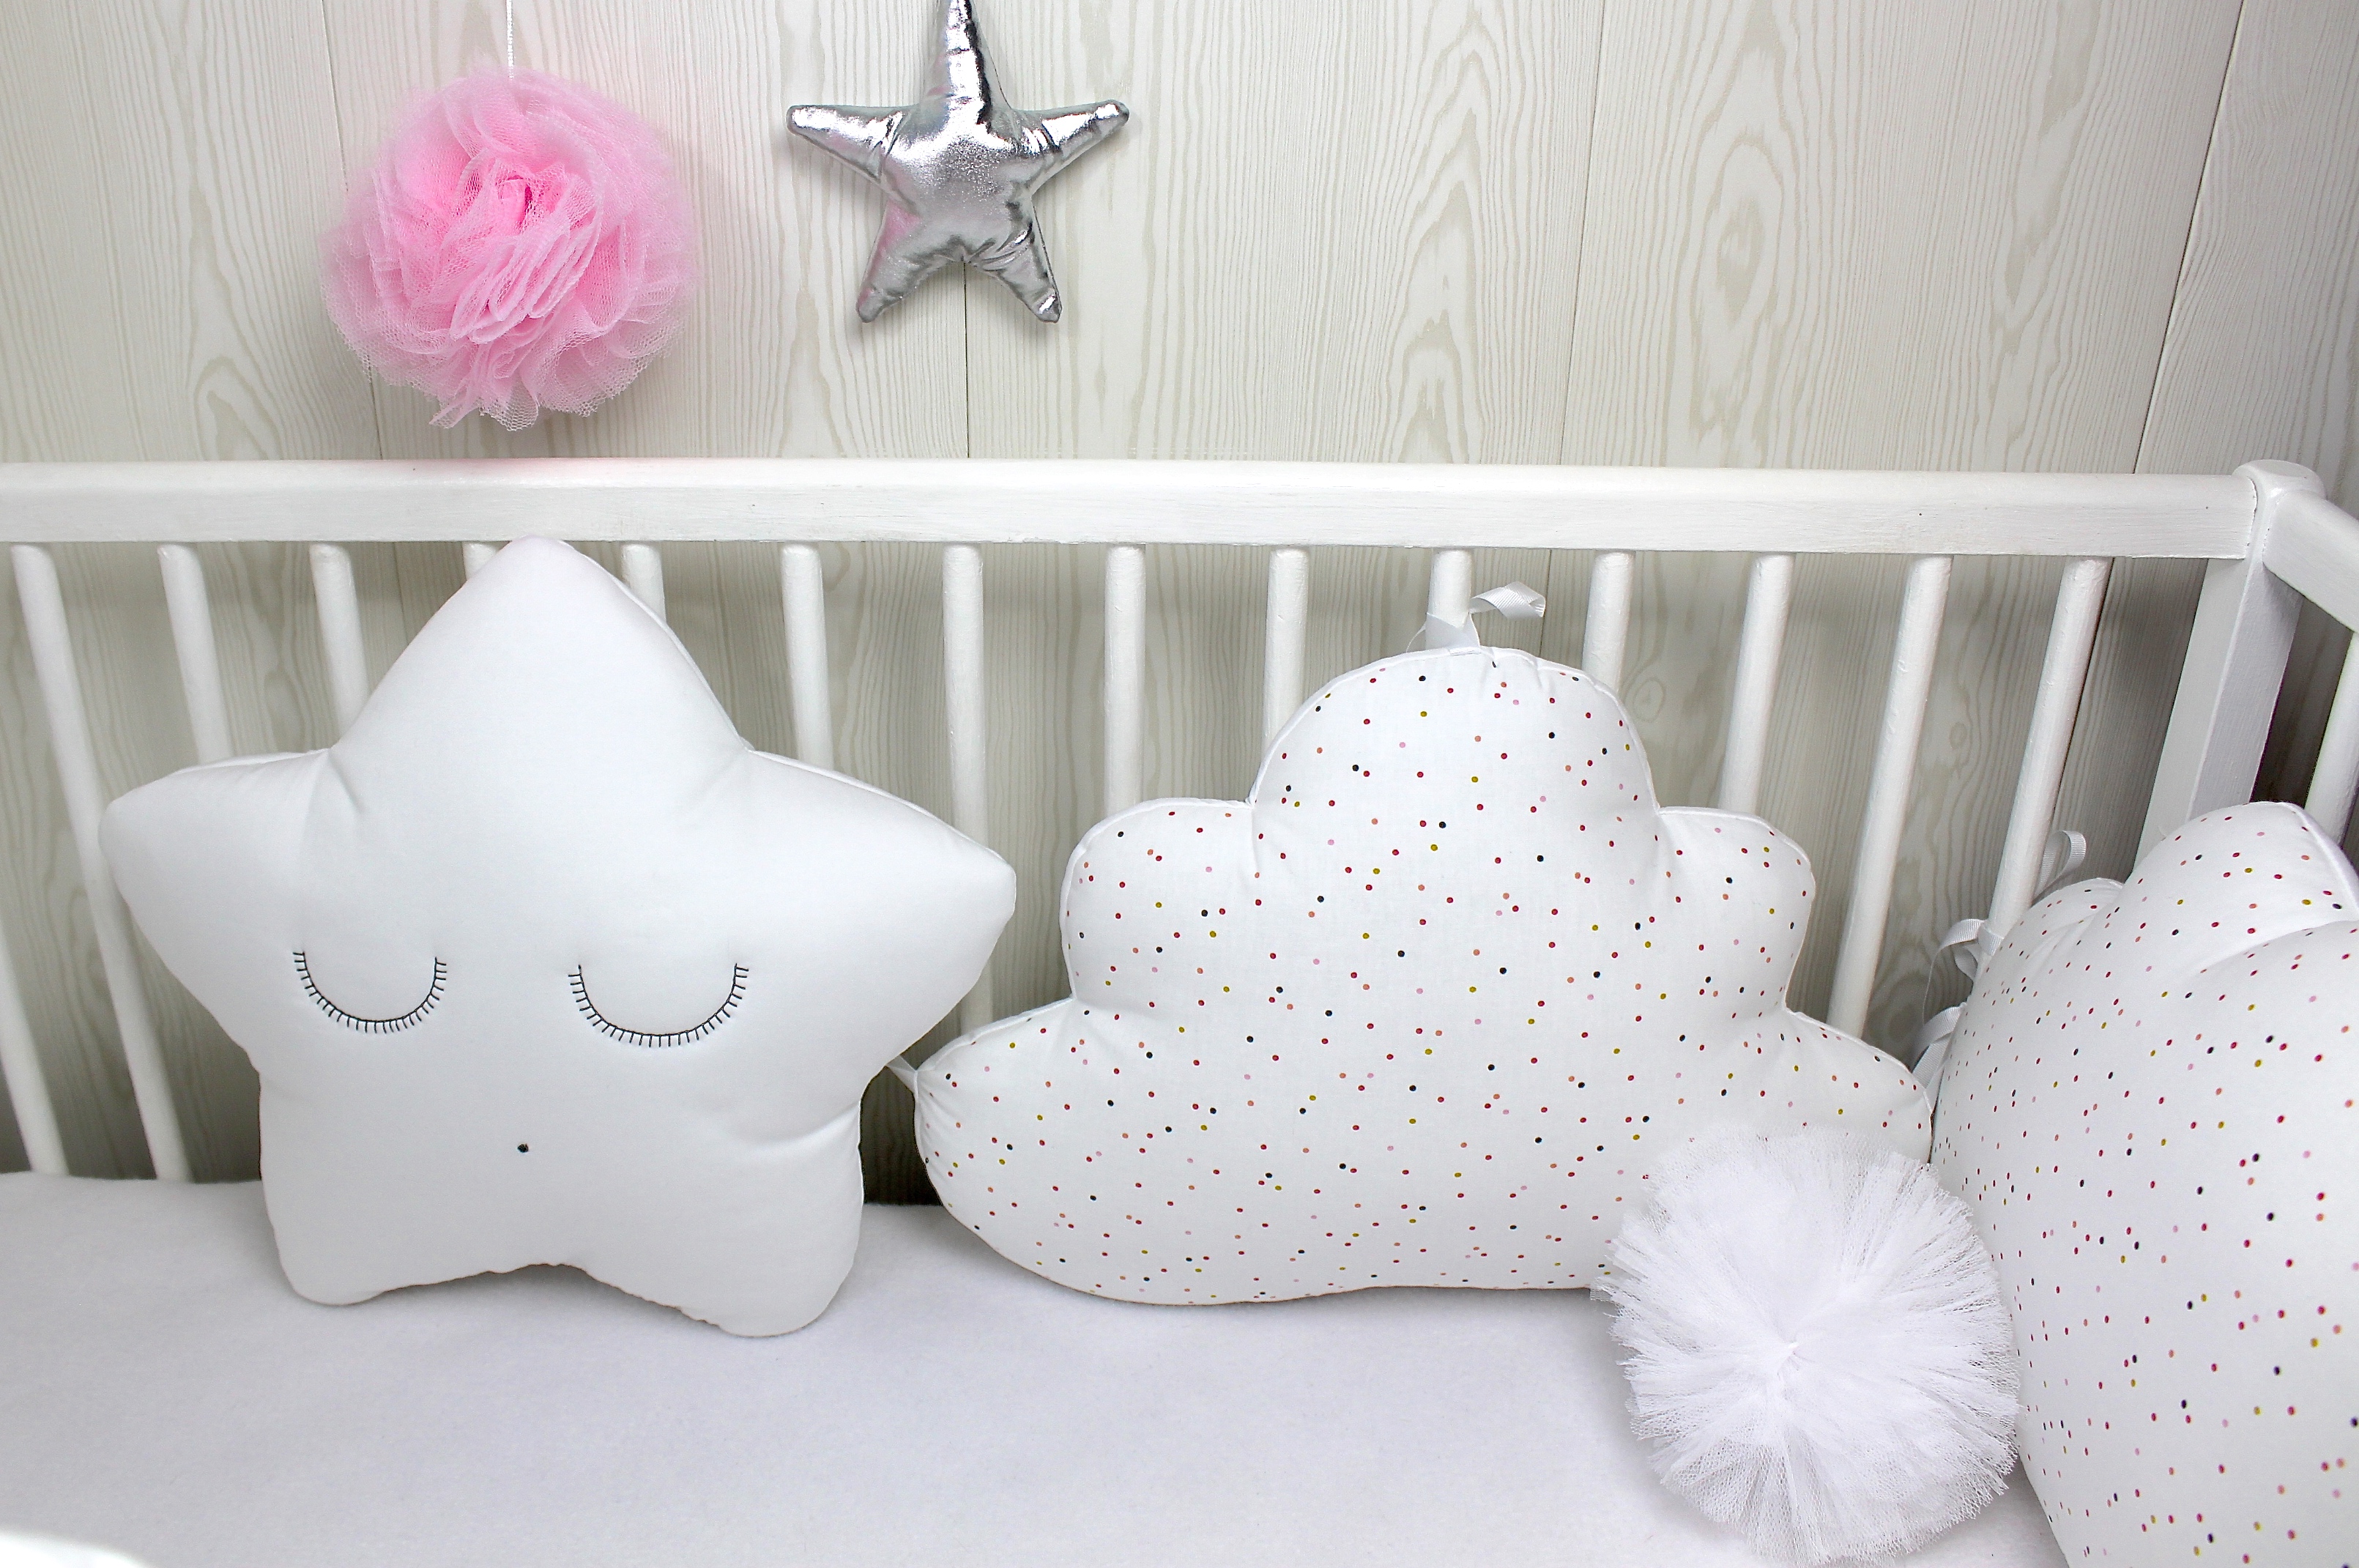 Tour de lit bébé en 60cm large, 5 coussins: lapin blanc, étoile et